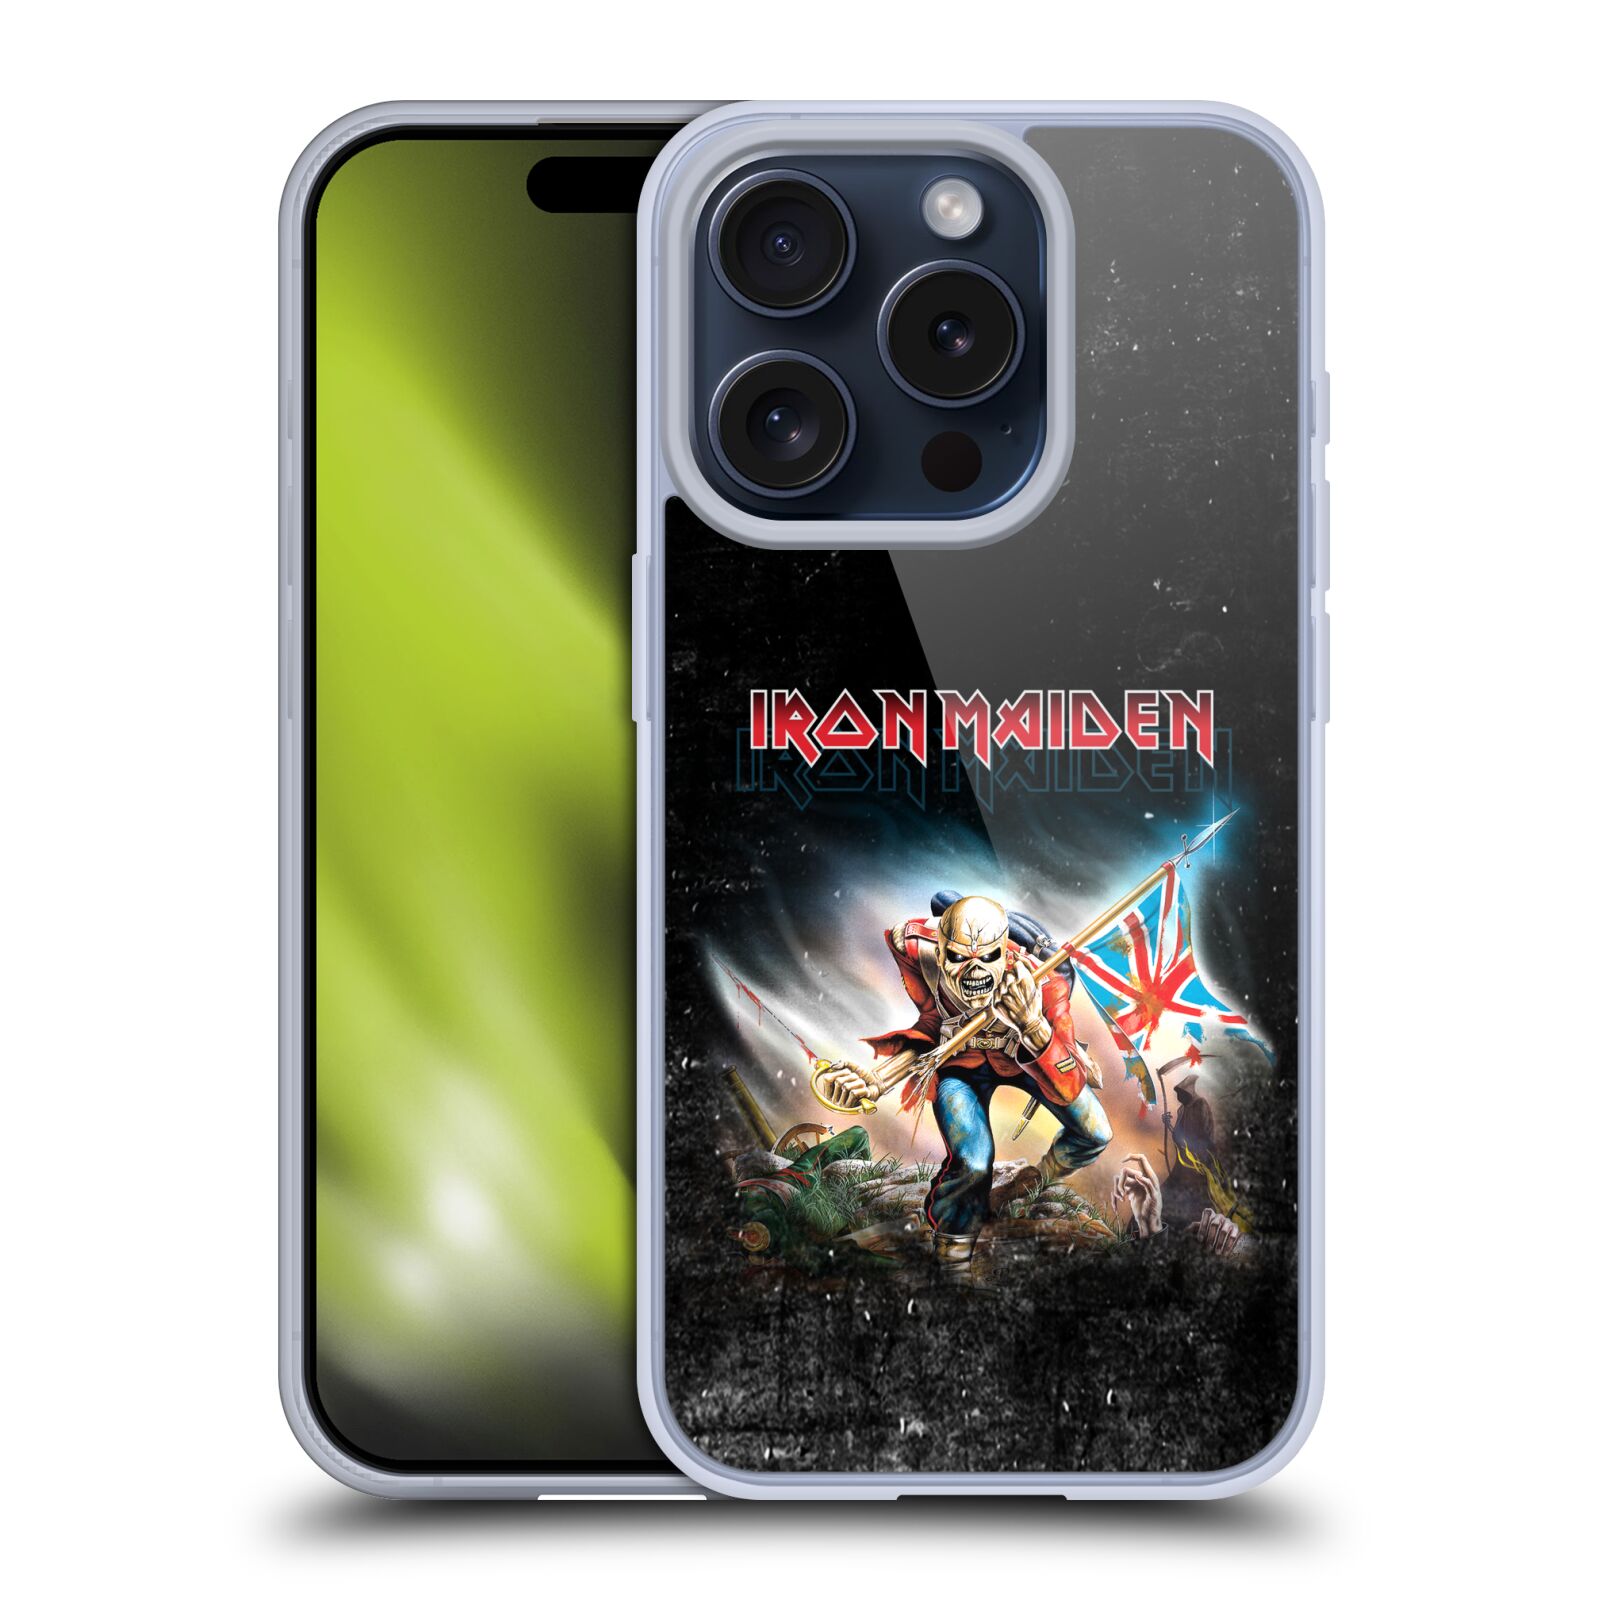 Silikonové lesklé pouzdro na mobil Apple iPhone 15 Pro - Head Case - Iron Maiden - Trooper 2016 (Silikonový lesklý kryt, obal, pouzdro na mobilní telefon Apple iPhone 15 Pro s motivem Iron Maiden - Trooper 2016)